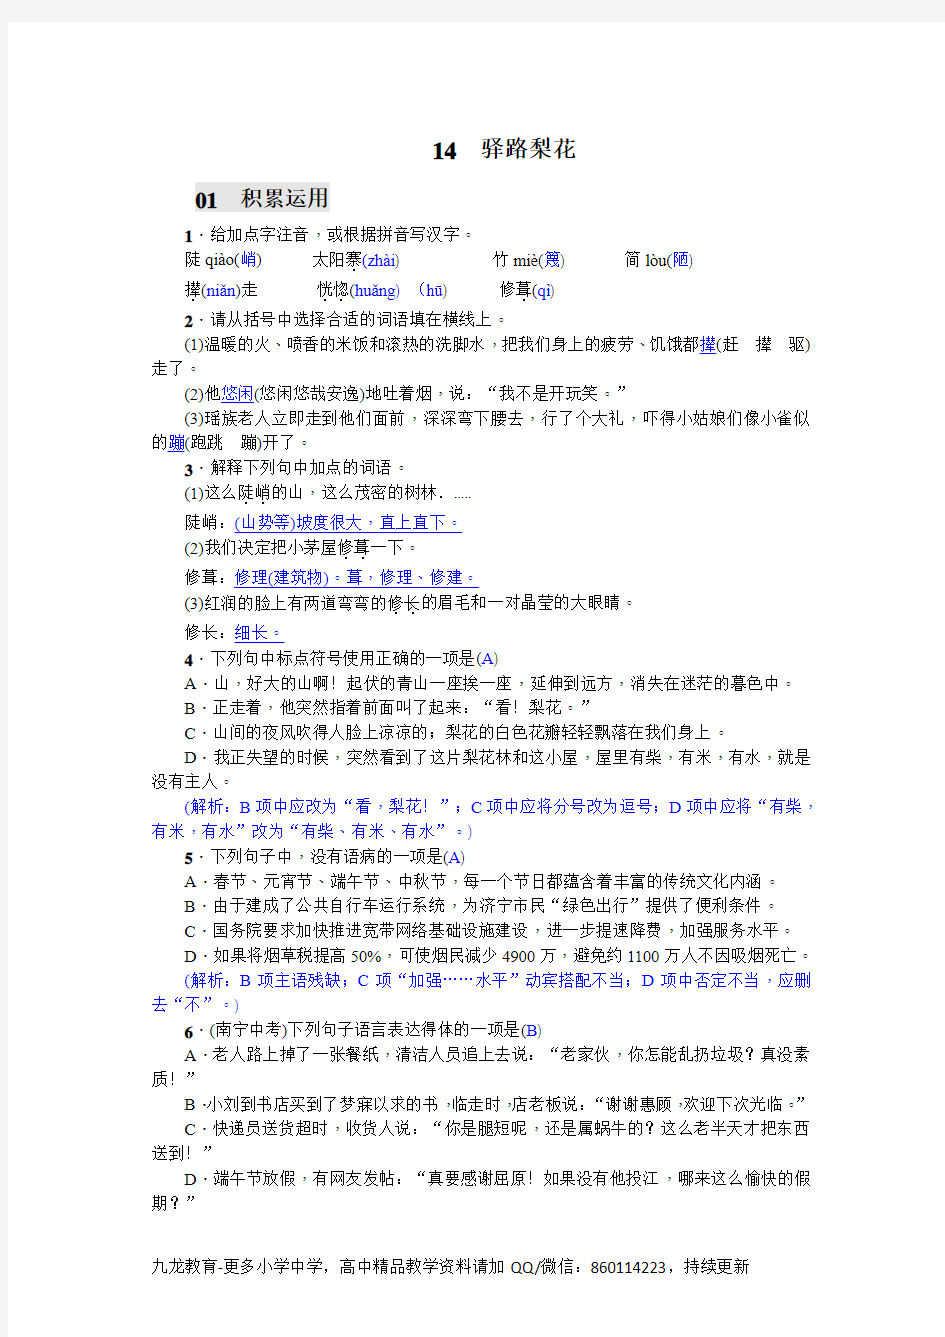 人教版初中语文七年级下册习题 14 驿路梨花 (含答案)